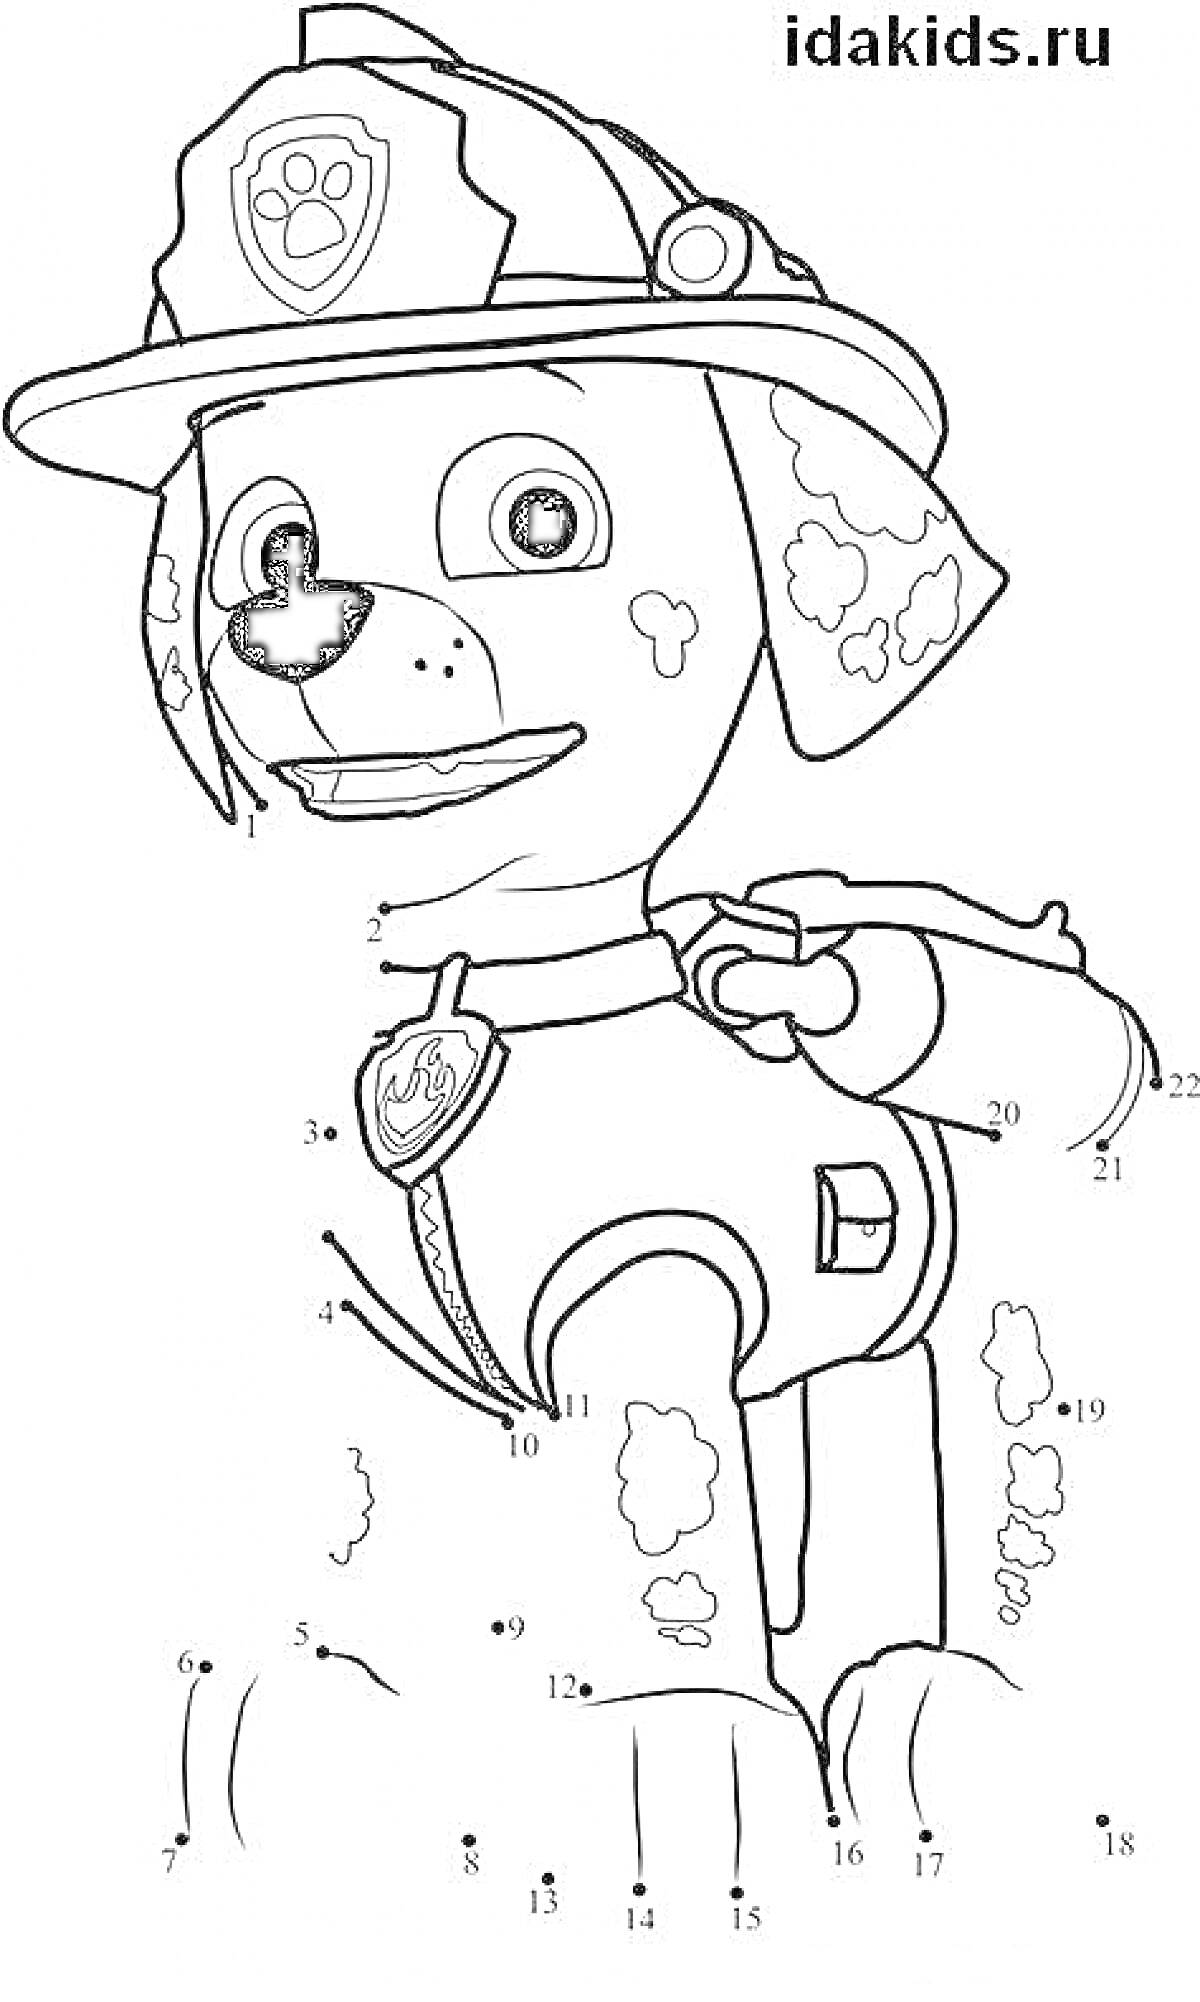 Раскраска Раскраска с маршалом из мультсериала, катающихся собак, шлем, ошейник, значок, цифры для раскрашивания.